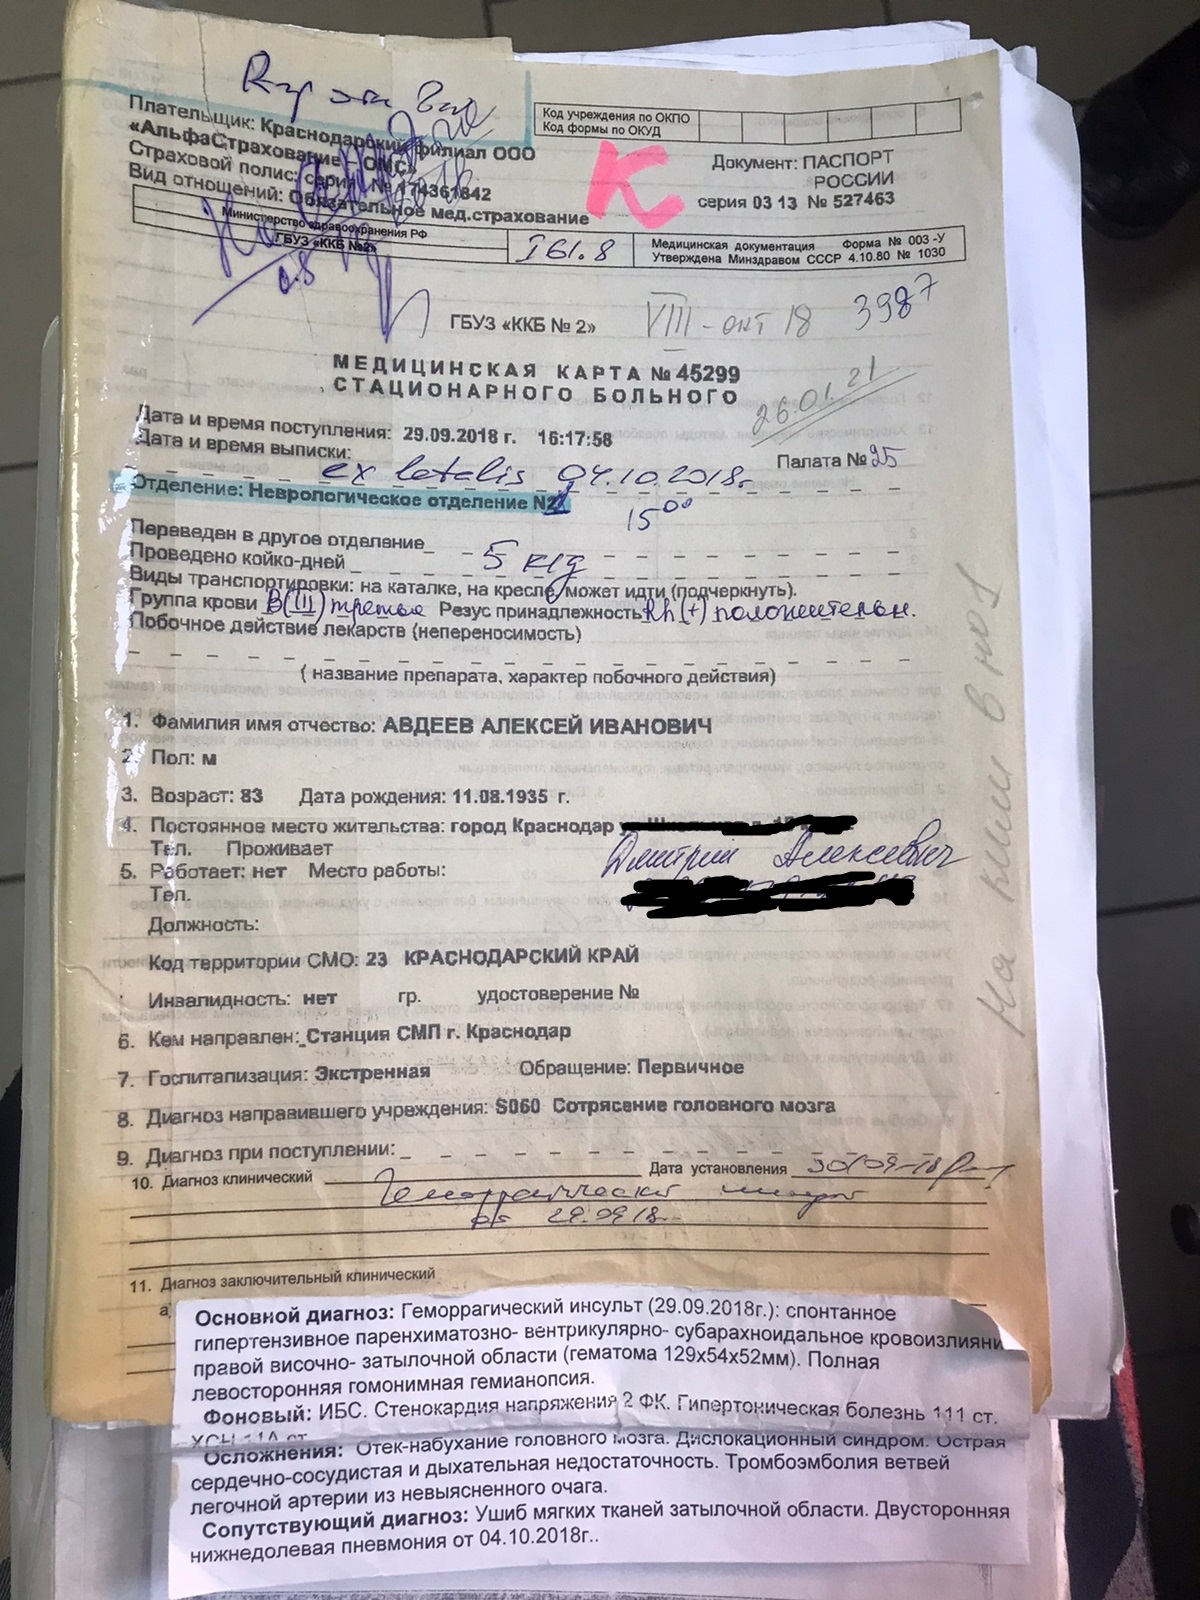 Фальсификация: в Краснодаре после ДТП умер человек, водитель наказание не понес